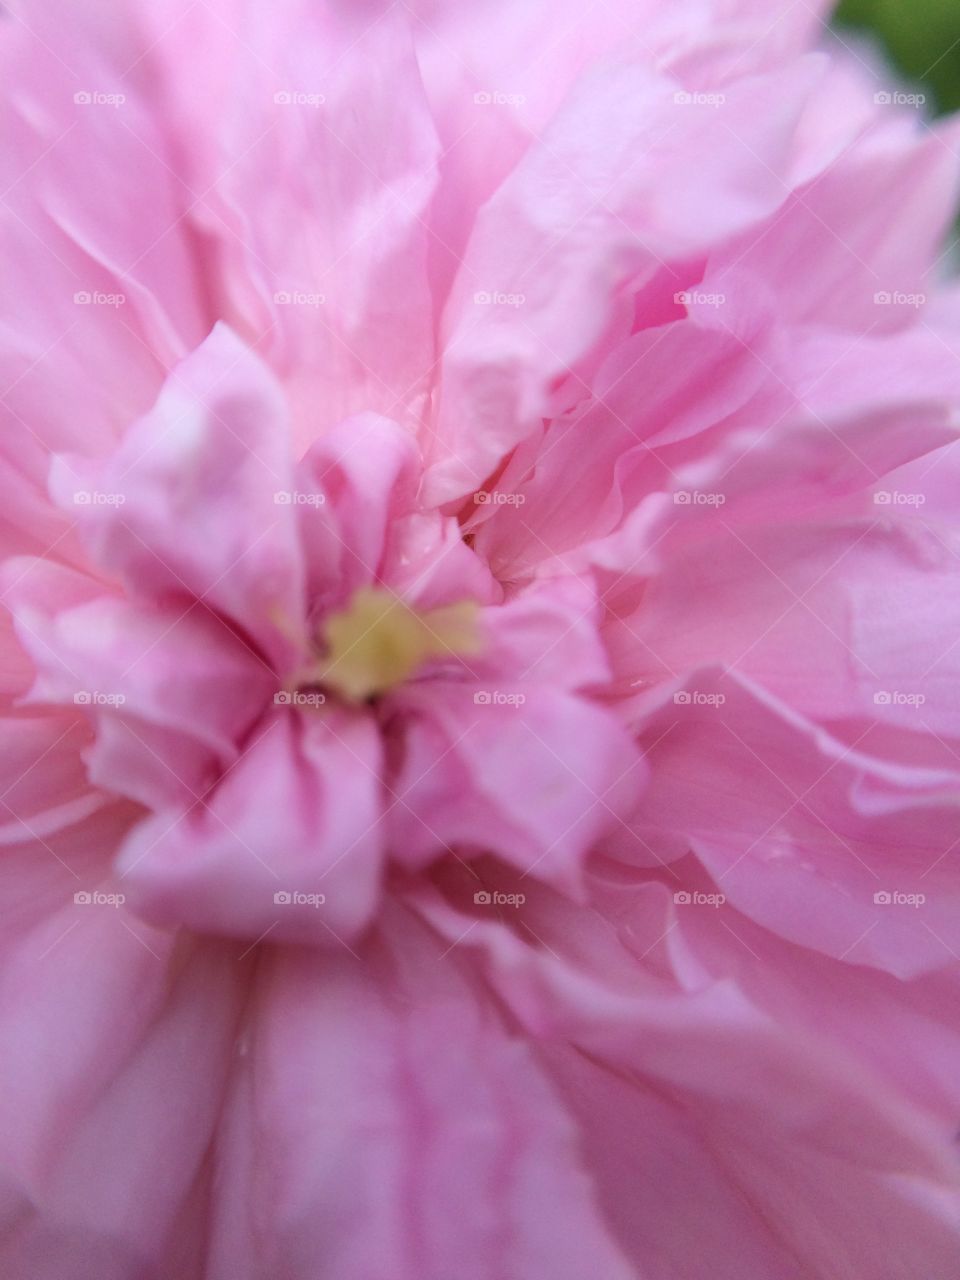 Pink flower closeup!
